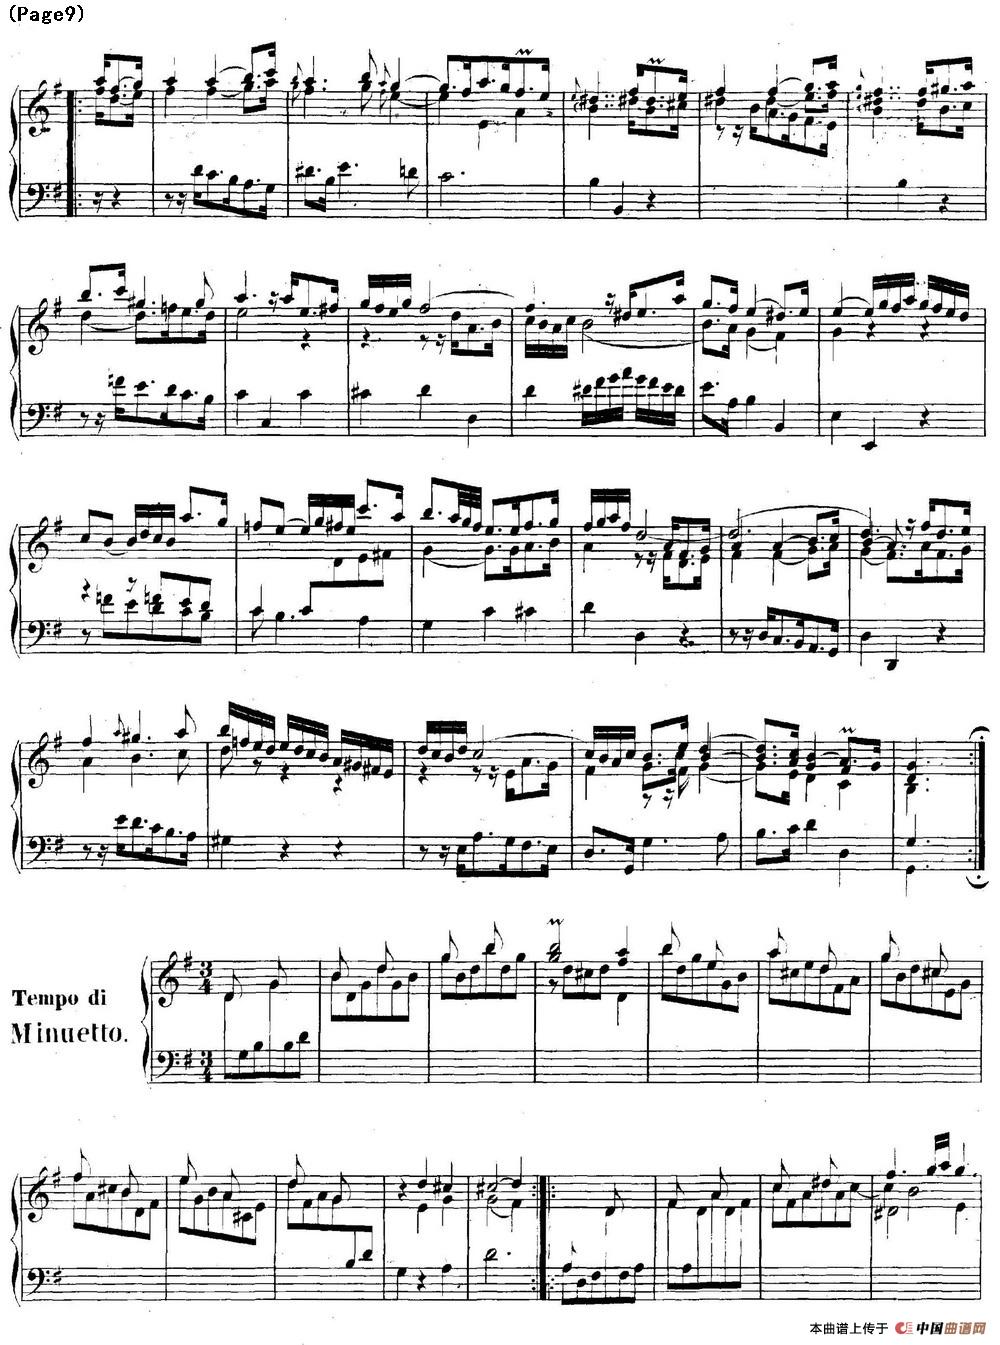 帕蒂塔6首德国组曲（No.5 G大调 巴赫 Partita G Major BWV 829）(1)_BWV0829_页面_09.jpg